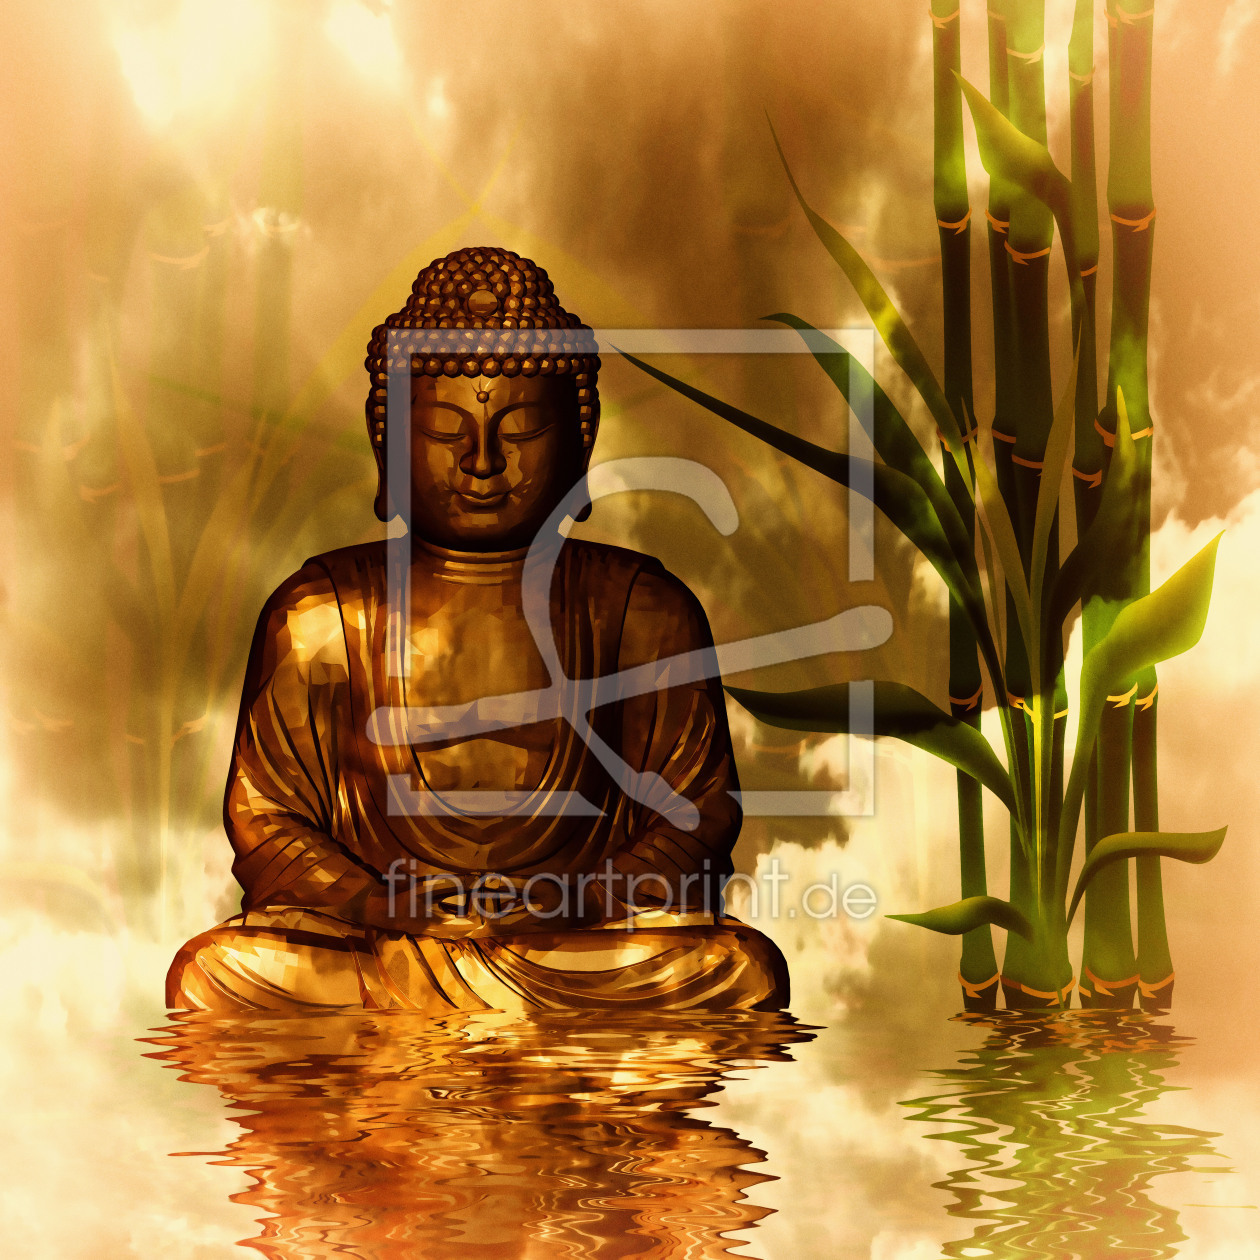 Bild-Nr.: 10572067 Buddha erstellt von DagmarMarina